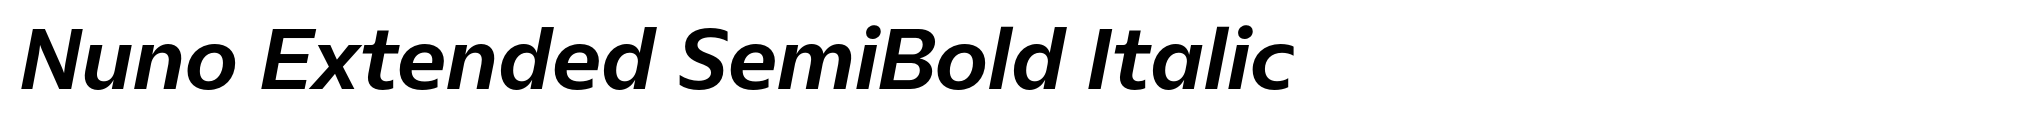 Nuno Extended SemiBold Italic image